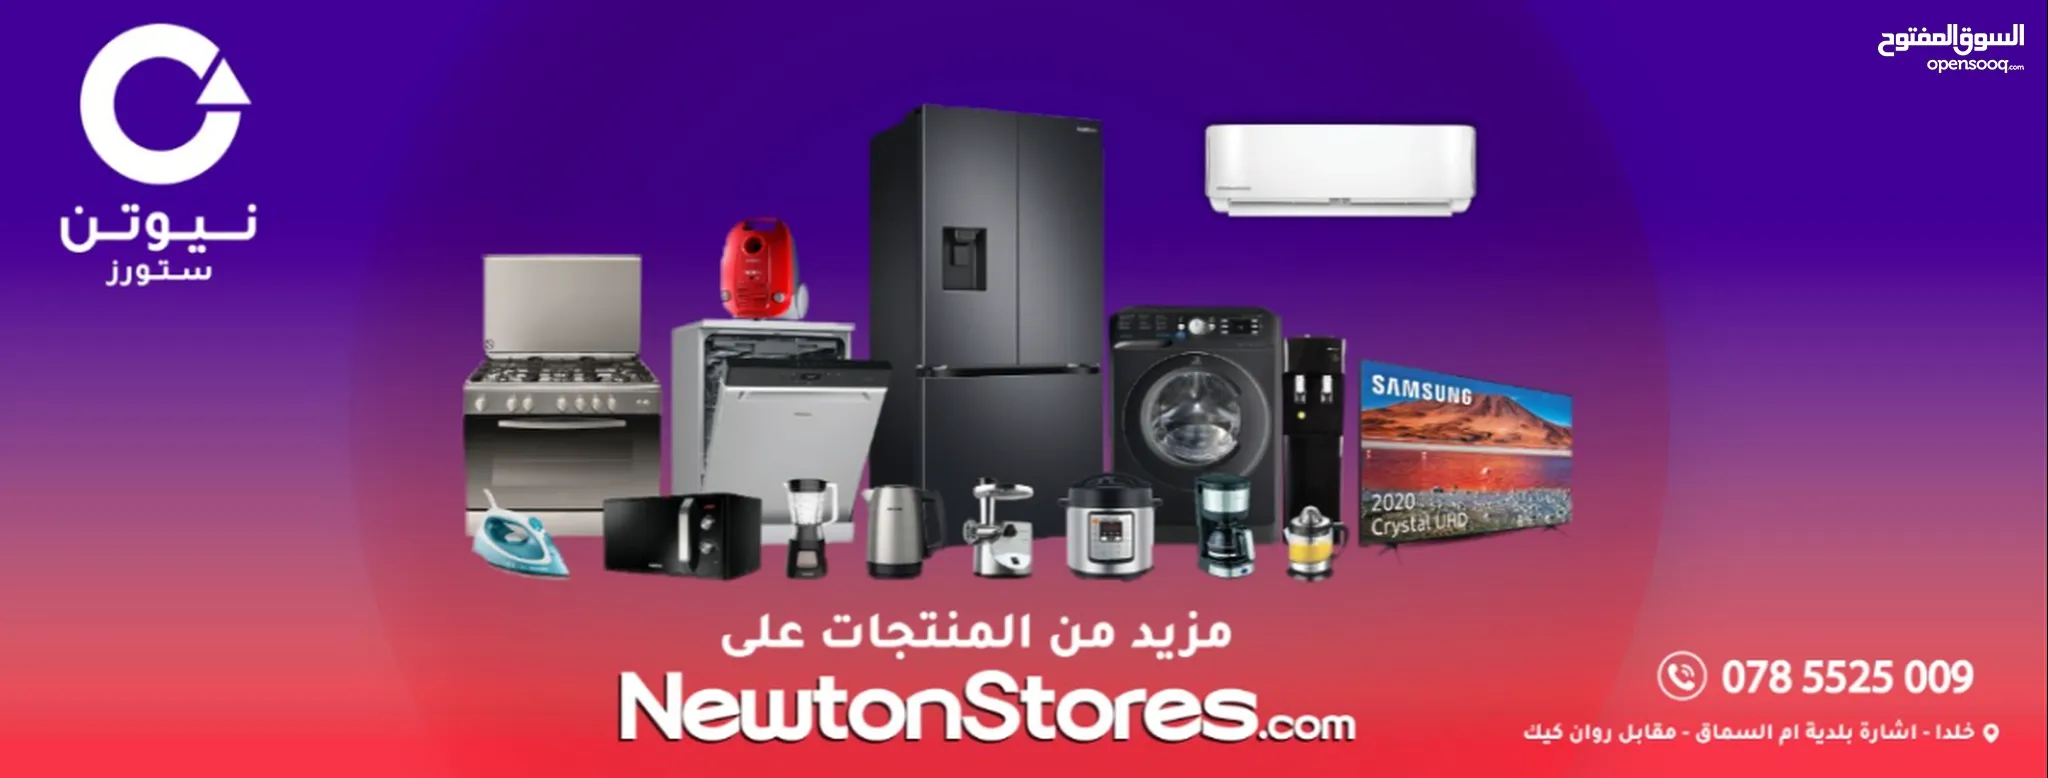 نيوتن ستورز للاجهزة الكهربائية و التكييف in Jordan : Other in Amman : 9 Ads